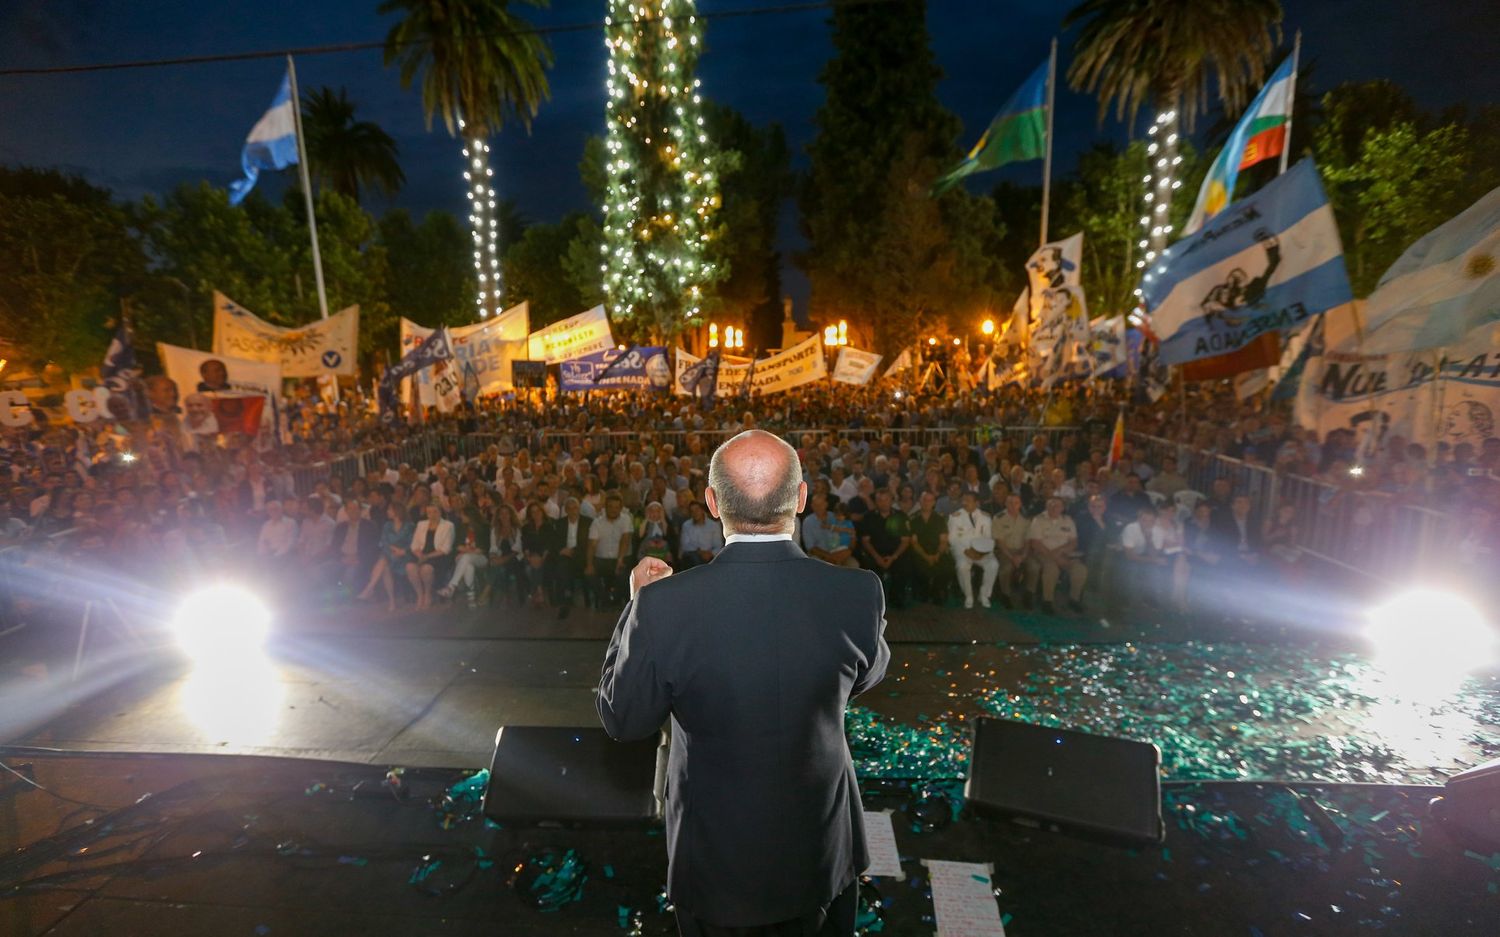 Ensenada: Asumió Mario Secco su quinto mandato con el mismo traje que utilizó en 2003